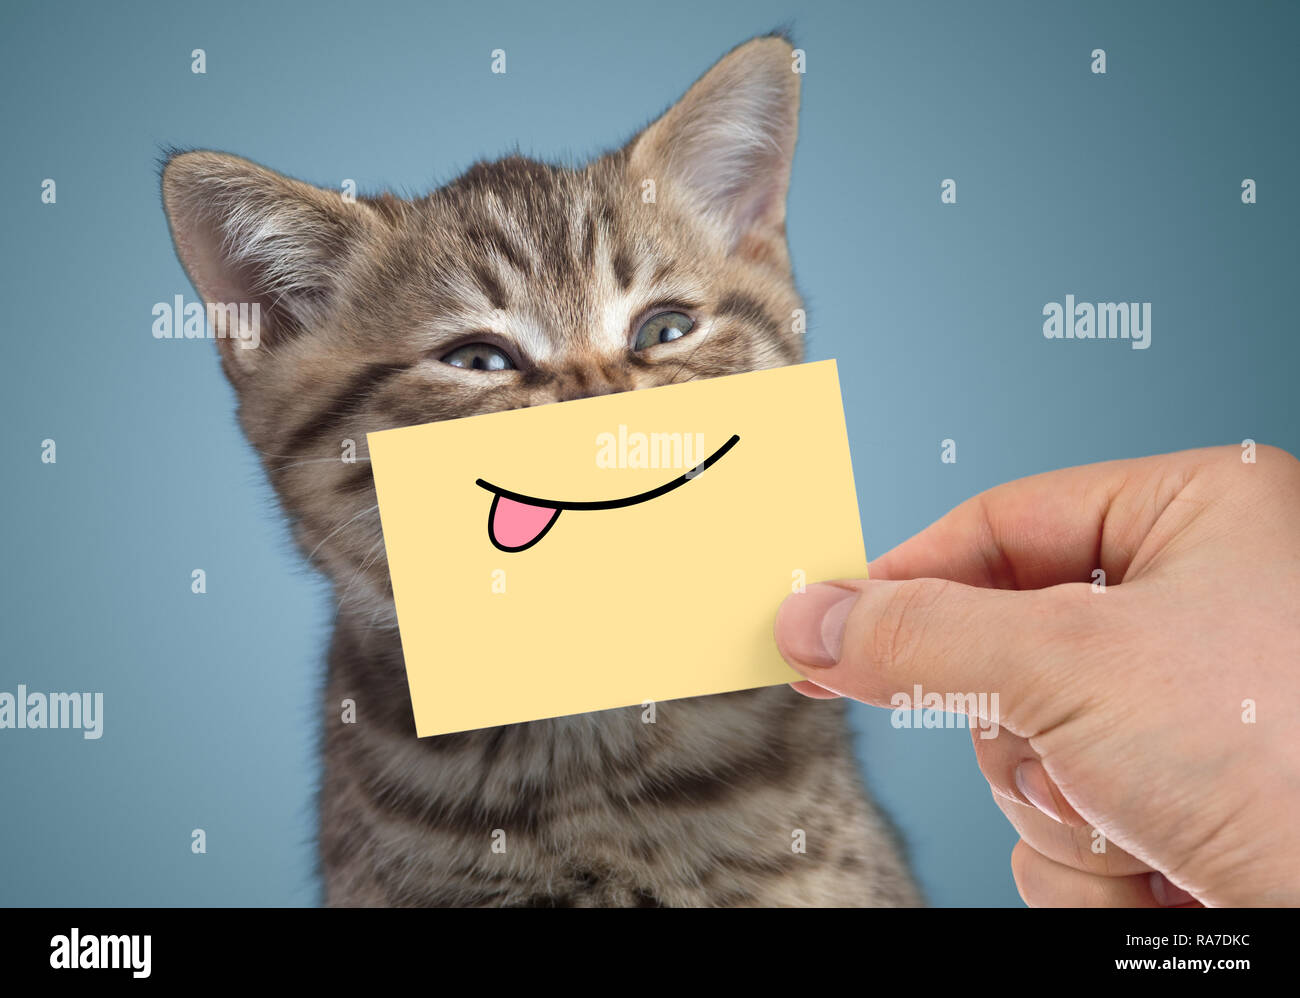 Gato feliz retrato con divertida sonrisa y lengua Foto de stock